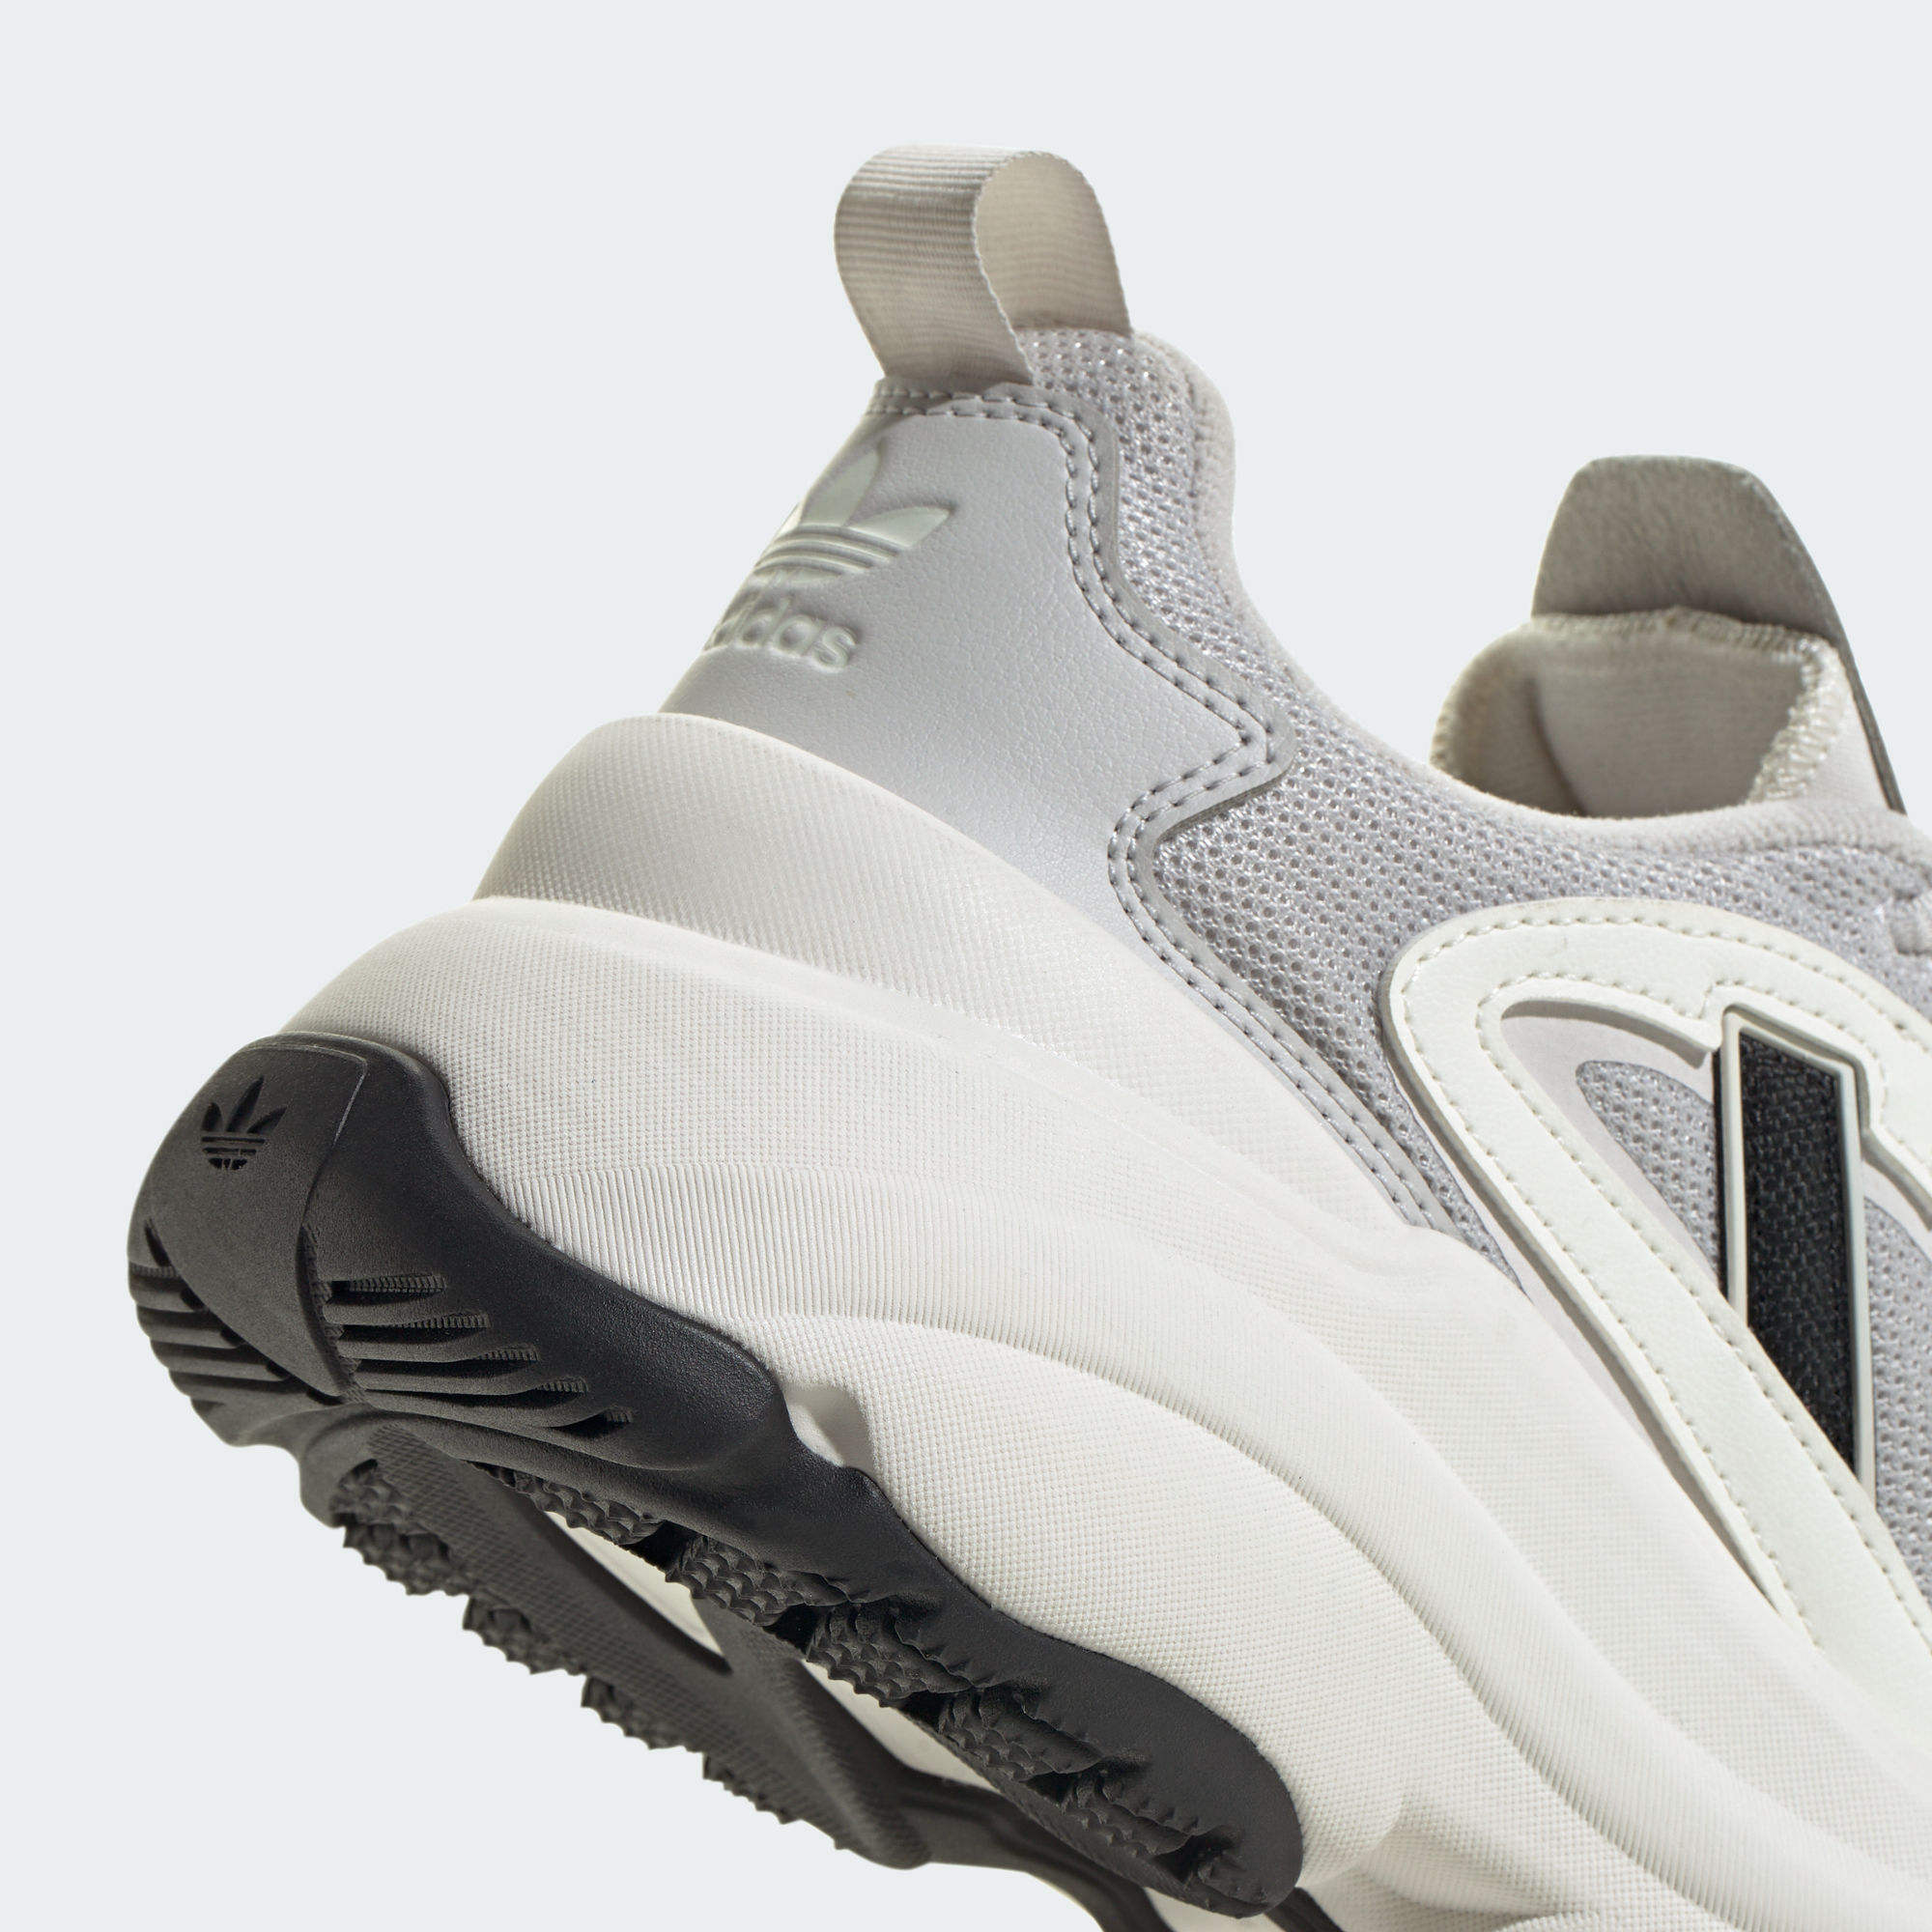 OZGAIA 運動鞋- 灰色| 女子| adidas(愛迪達)香港官方網上商店